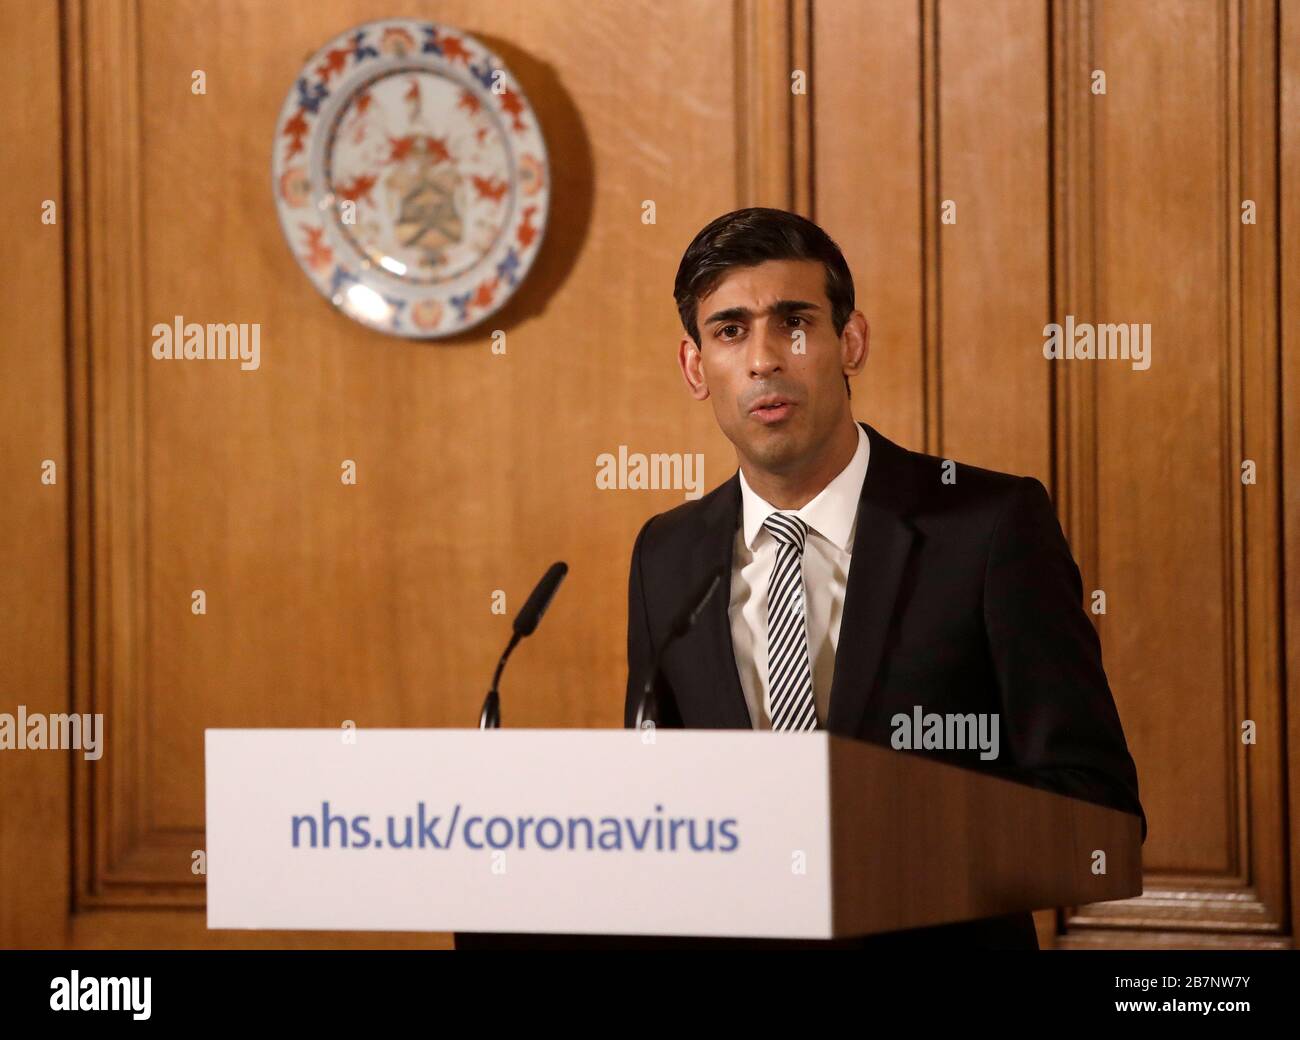 Le chancelier Rishi Sunak a parlé à un exposé des médias à Downing Street, Londres, sur Coronavirus (COVID-19). Date de l'image: Mardi 17 mars 2020. Voir l'histoire de PA SANTÉ Coronavirus. Crédit photo devrait lire: Matt Dunham/PA fil Banque D'Images